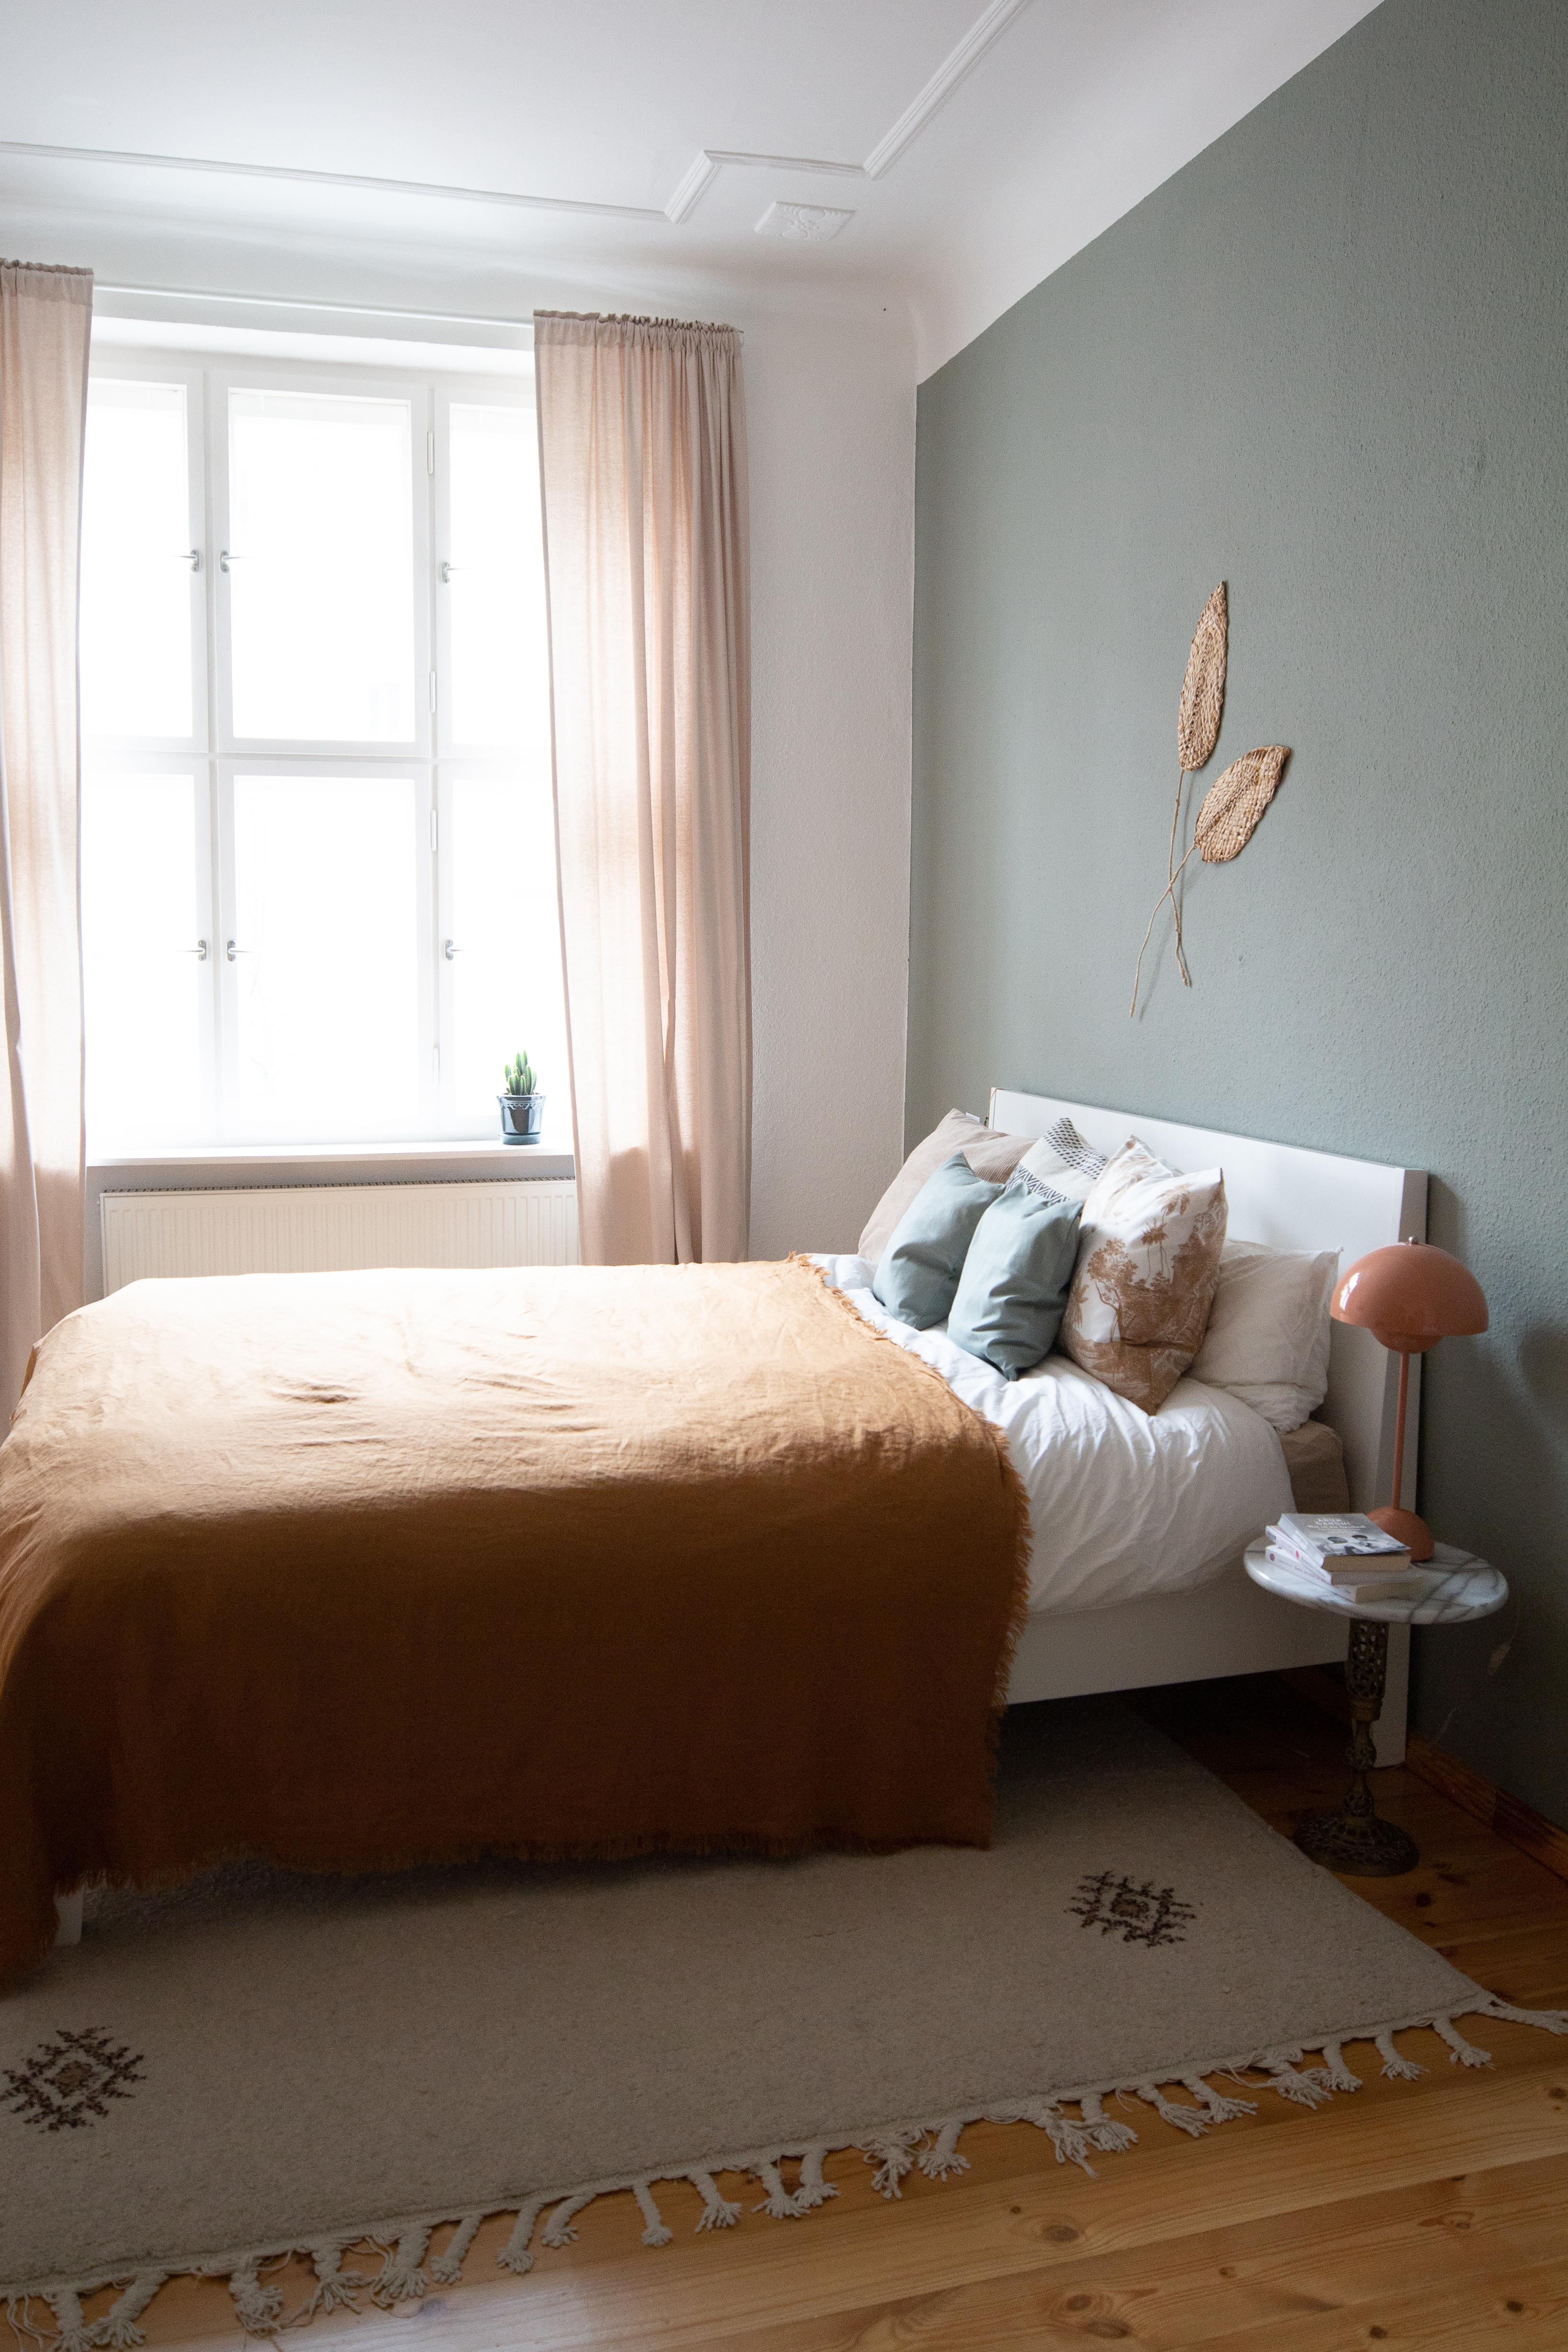 Sanfte Töne im Schlafzimmer 
#schlafzimmer #grünewand #farbkombination #altbau #naturtöne